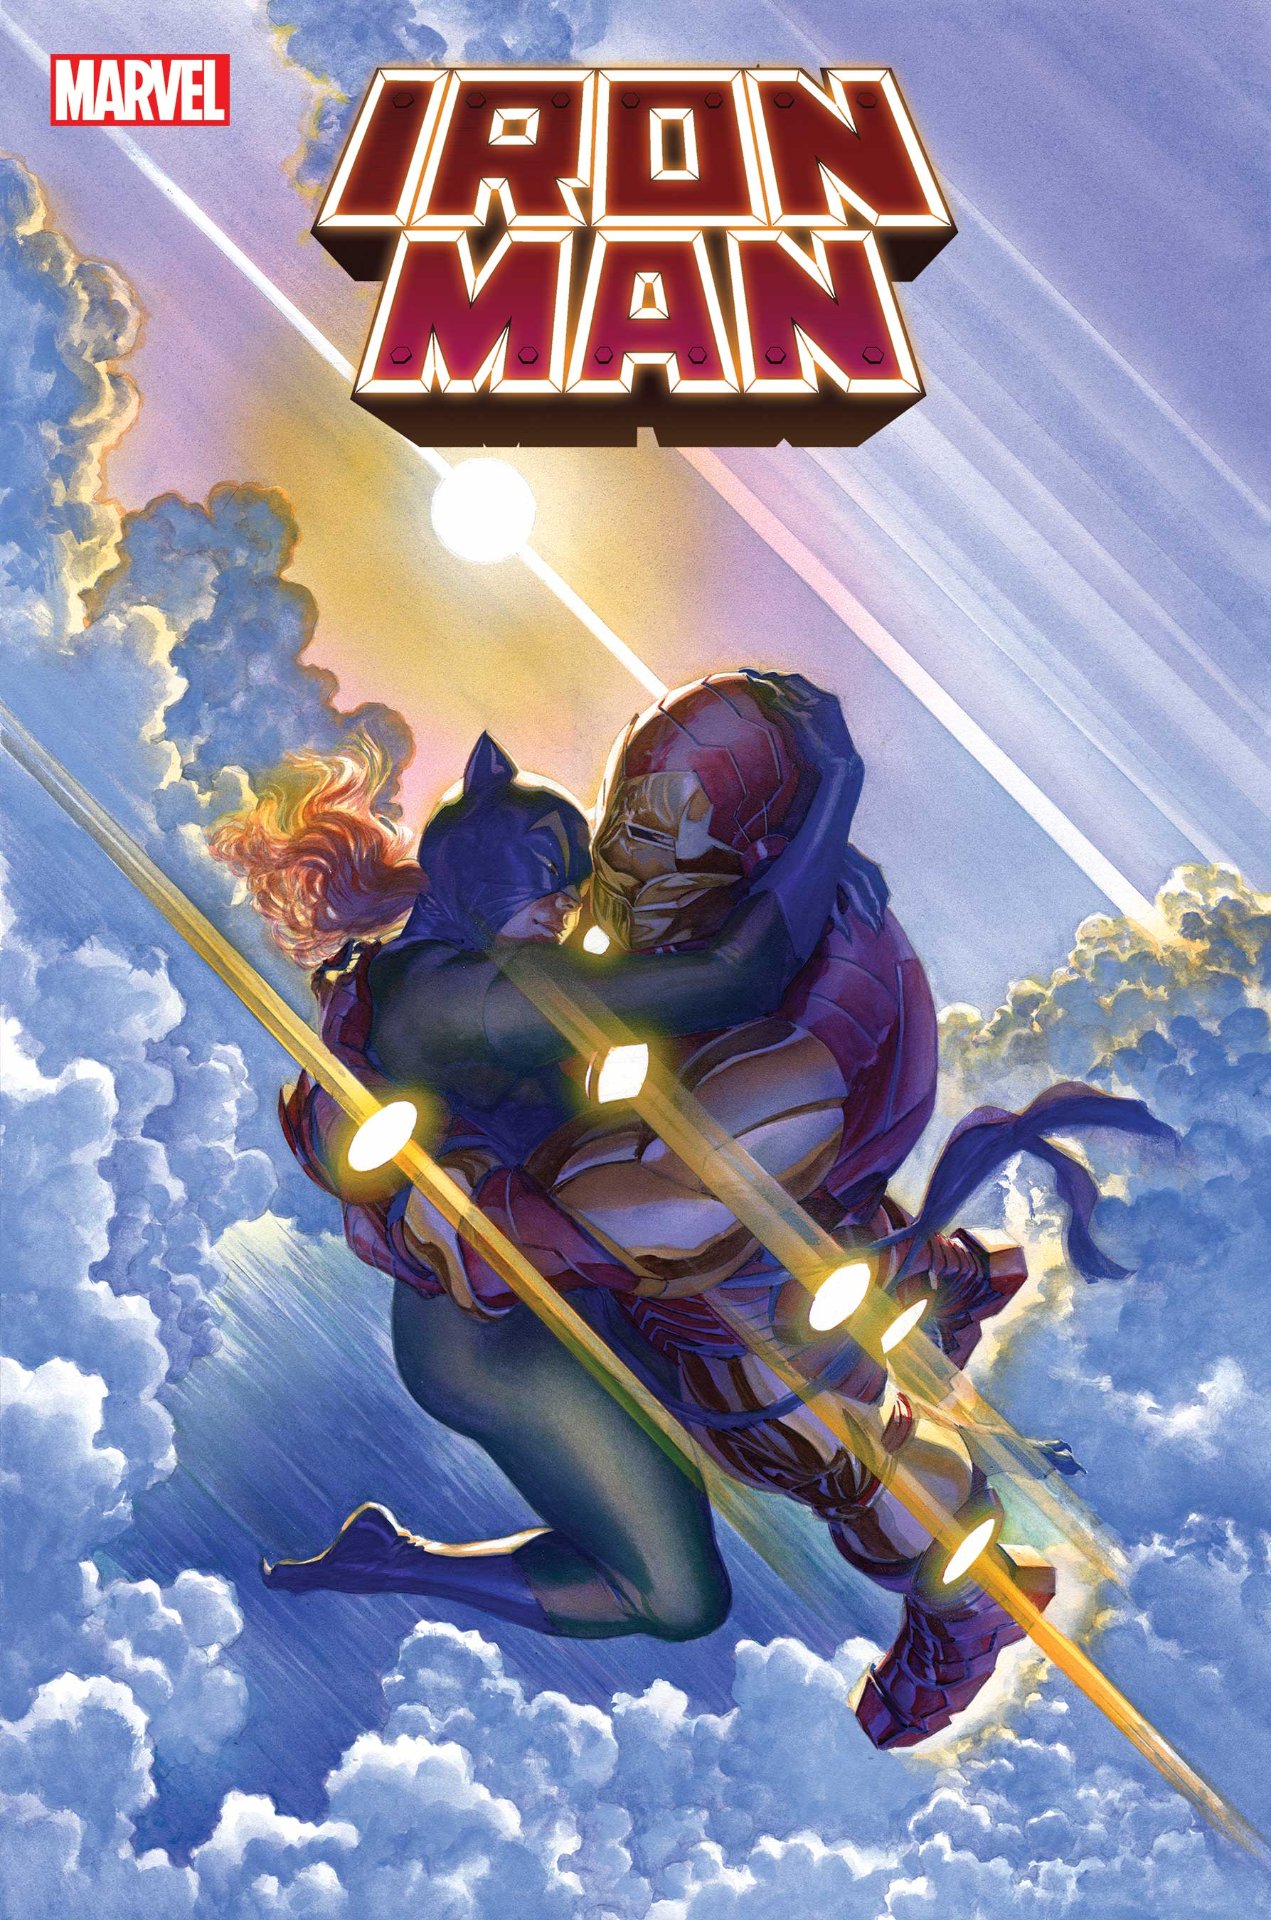 Portada de Iron Man #20 por Alex Ross